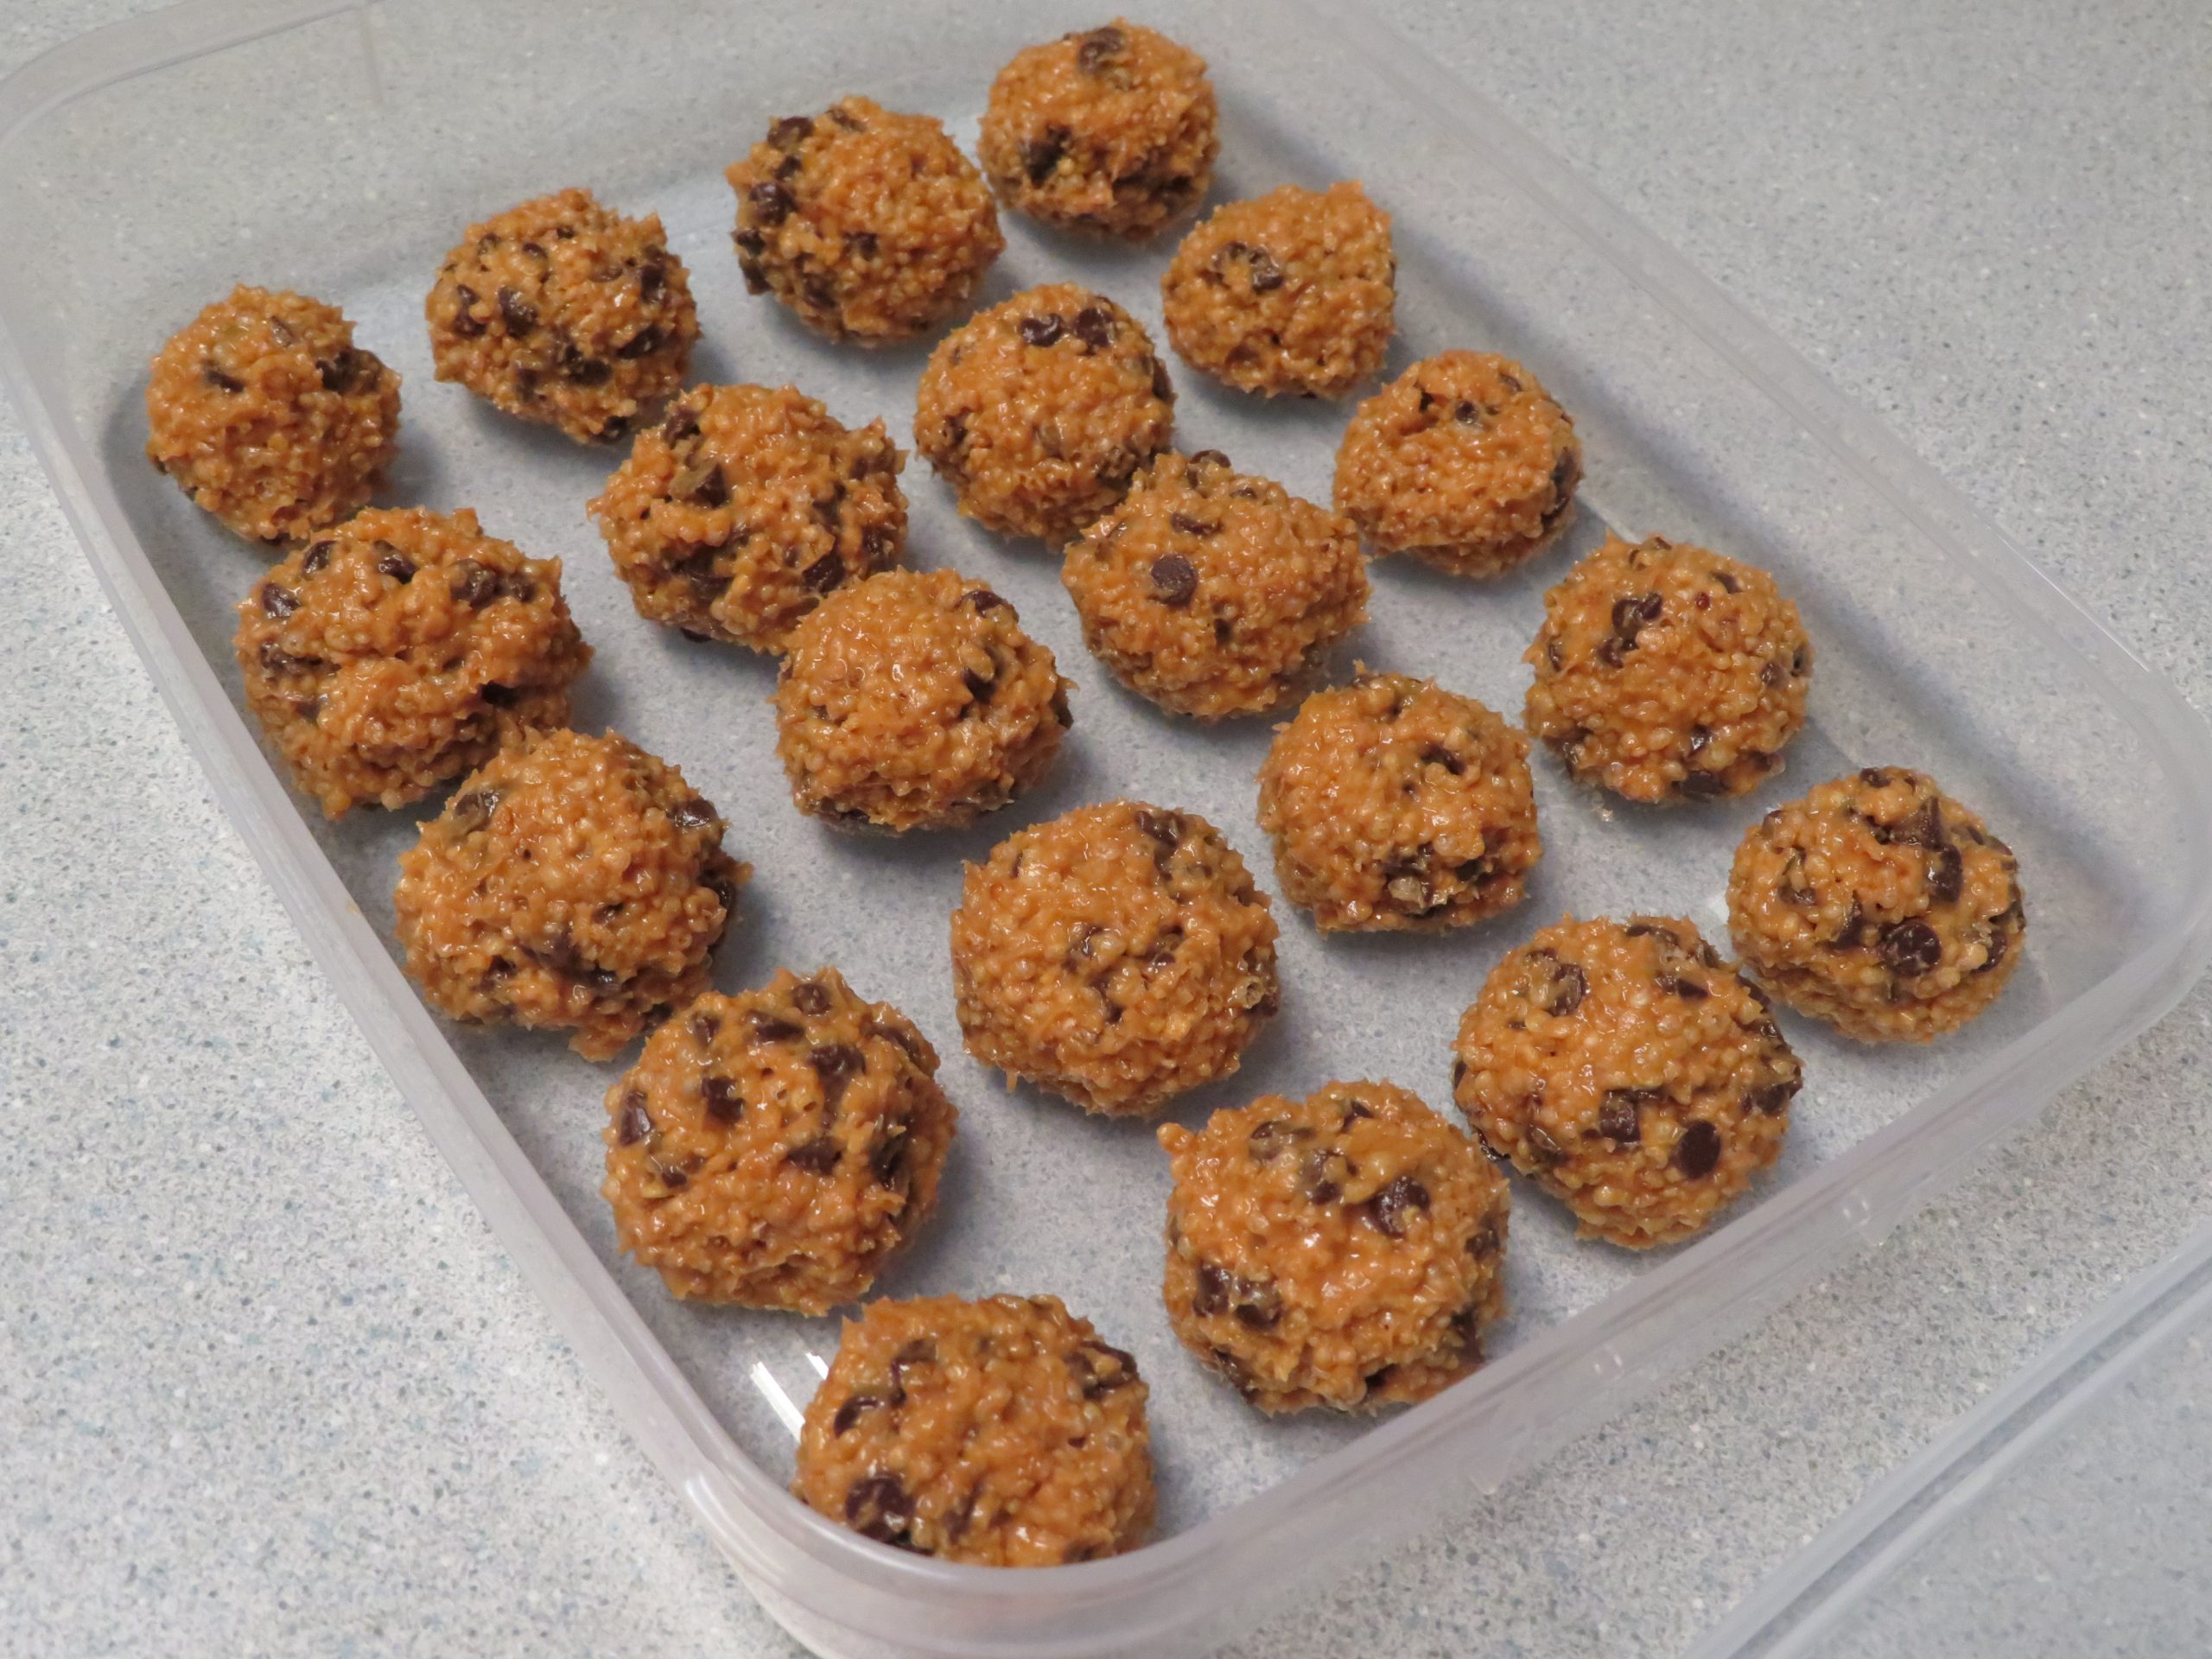 Crispy Quinoa Peanut Butter Balls in a clear plastic container